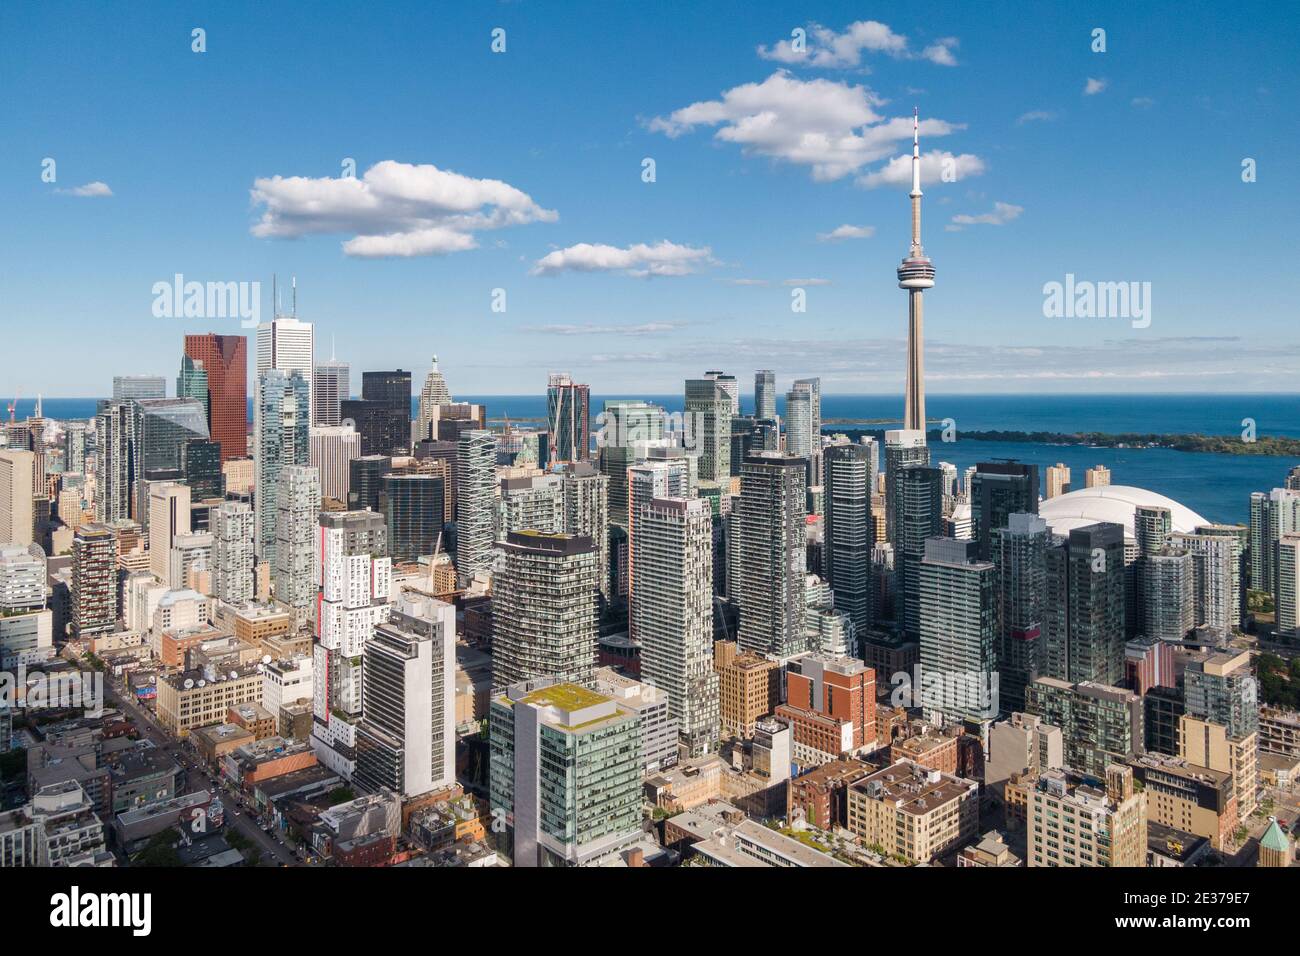 Toronto, Ontario, Canada, vista aerea del paesaggio urbano di Toronto che include il simbolo architettonico CN Tower e gli edifici moderni nel quartiere finanziario. Foto Stock